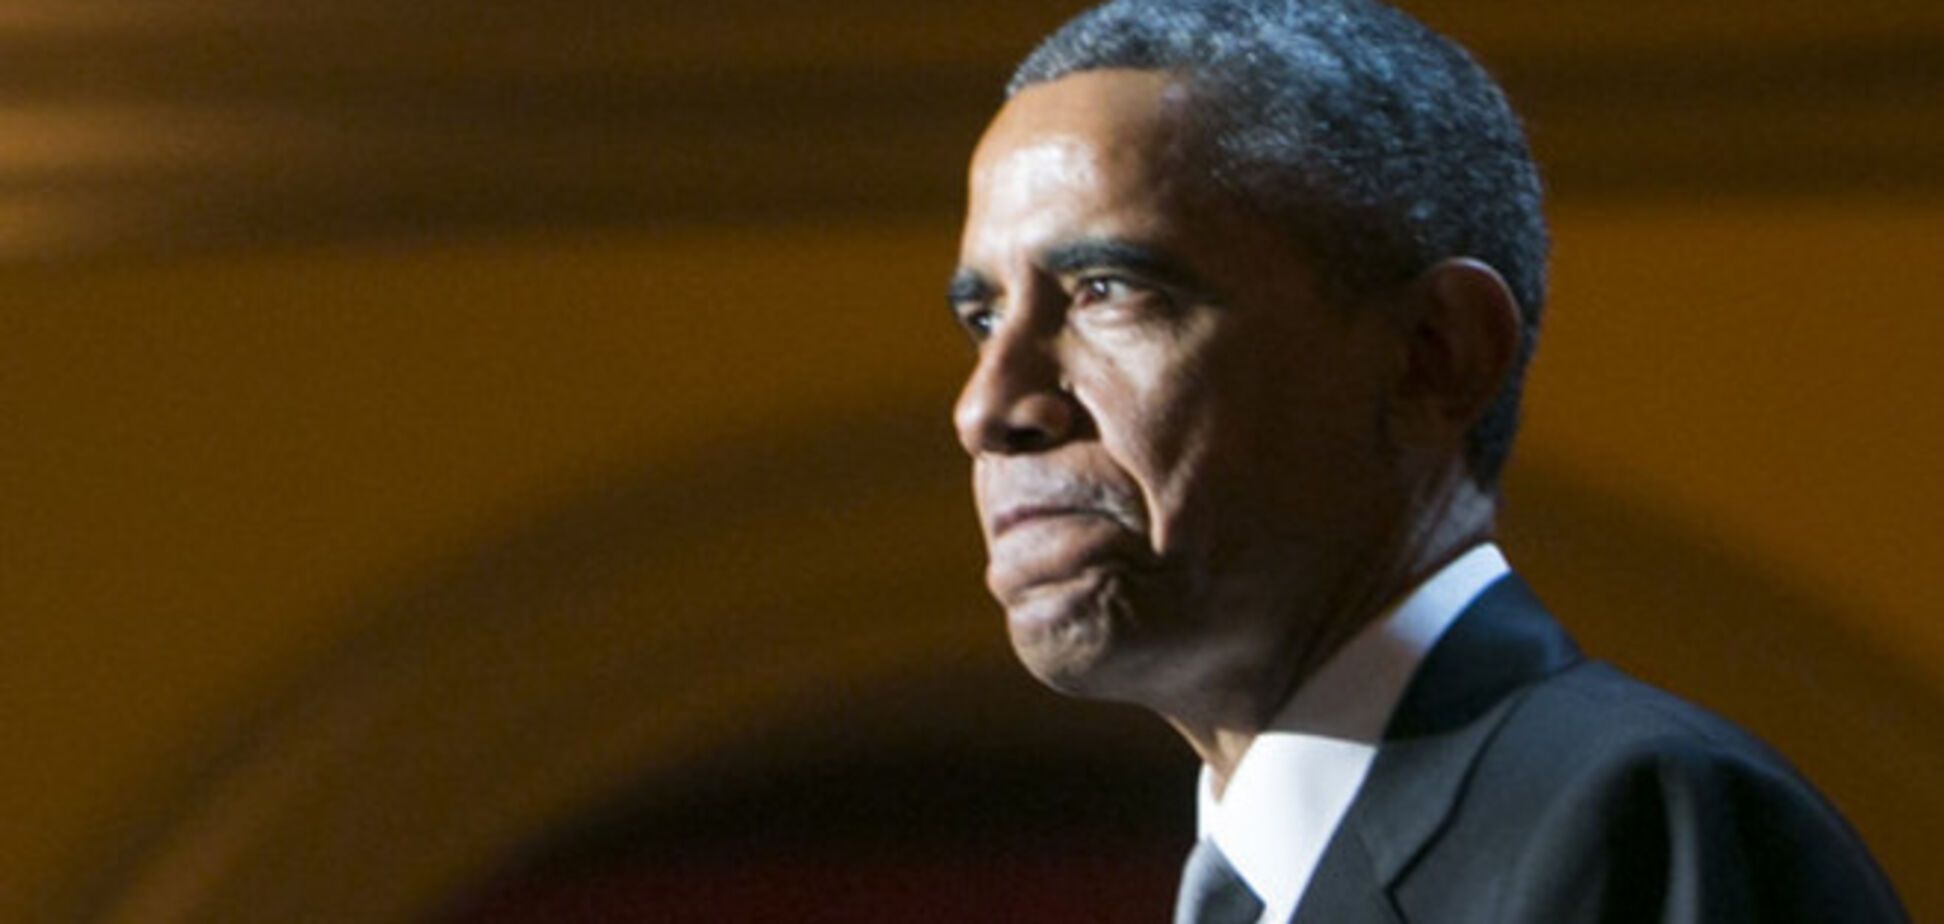 Обама подпишет акт о санкциях против РФ и о предоставлении помощи Украине - Белый дом